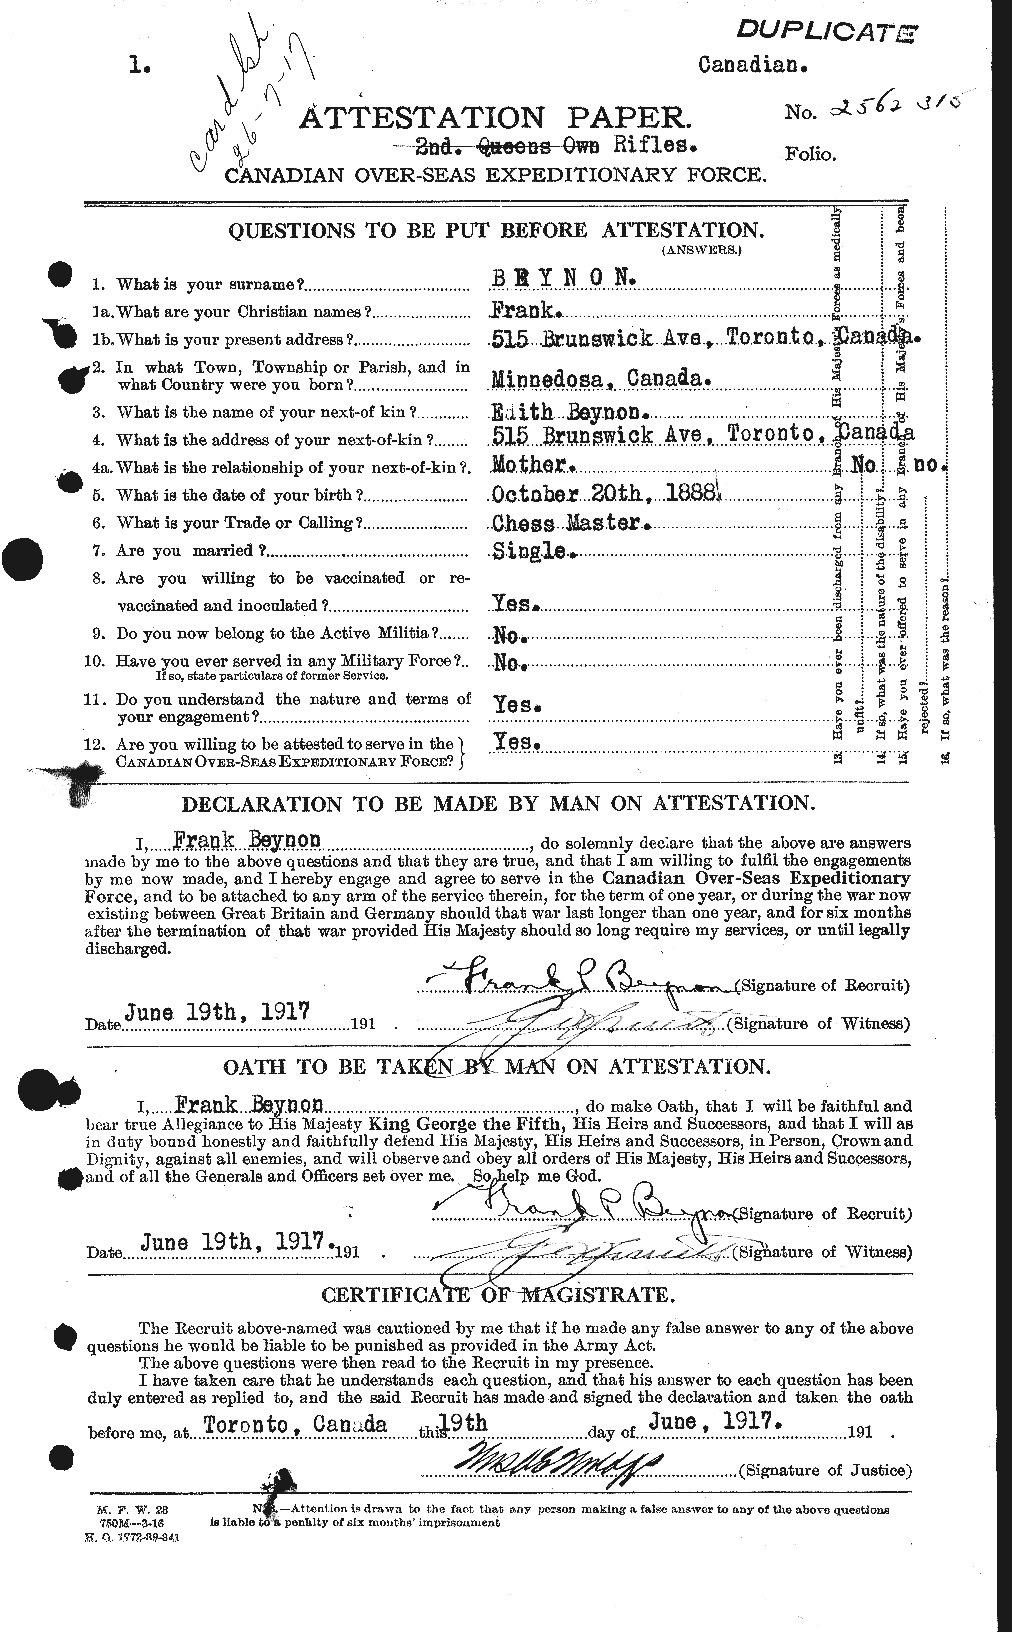 Dossiers du Personnel de la Première Guerre mondiale - CEC 237507a